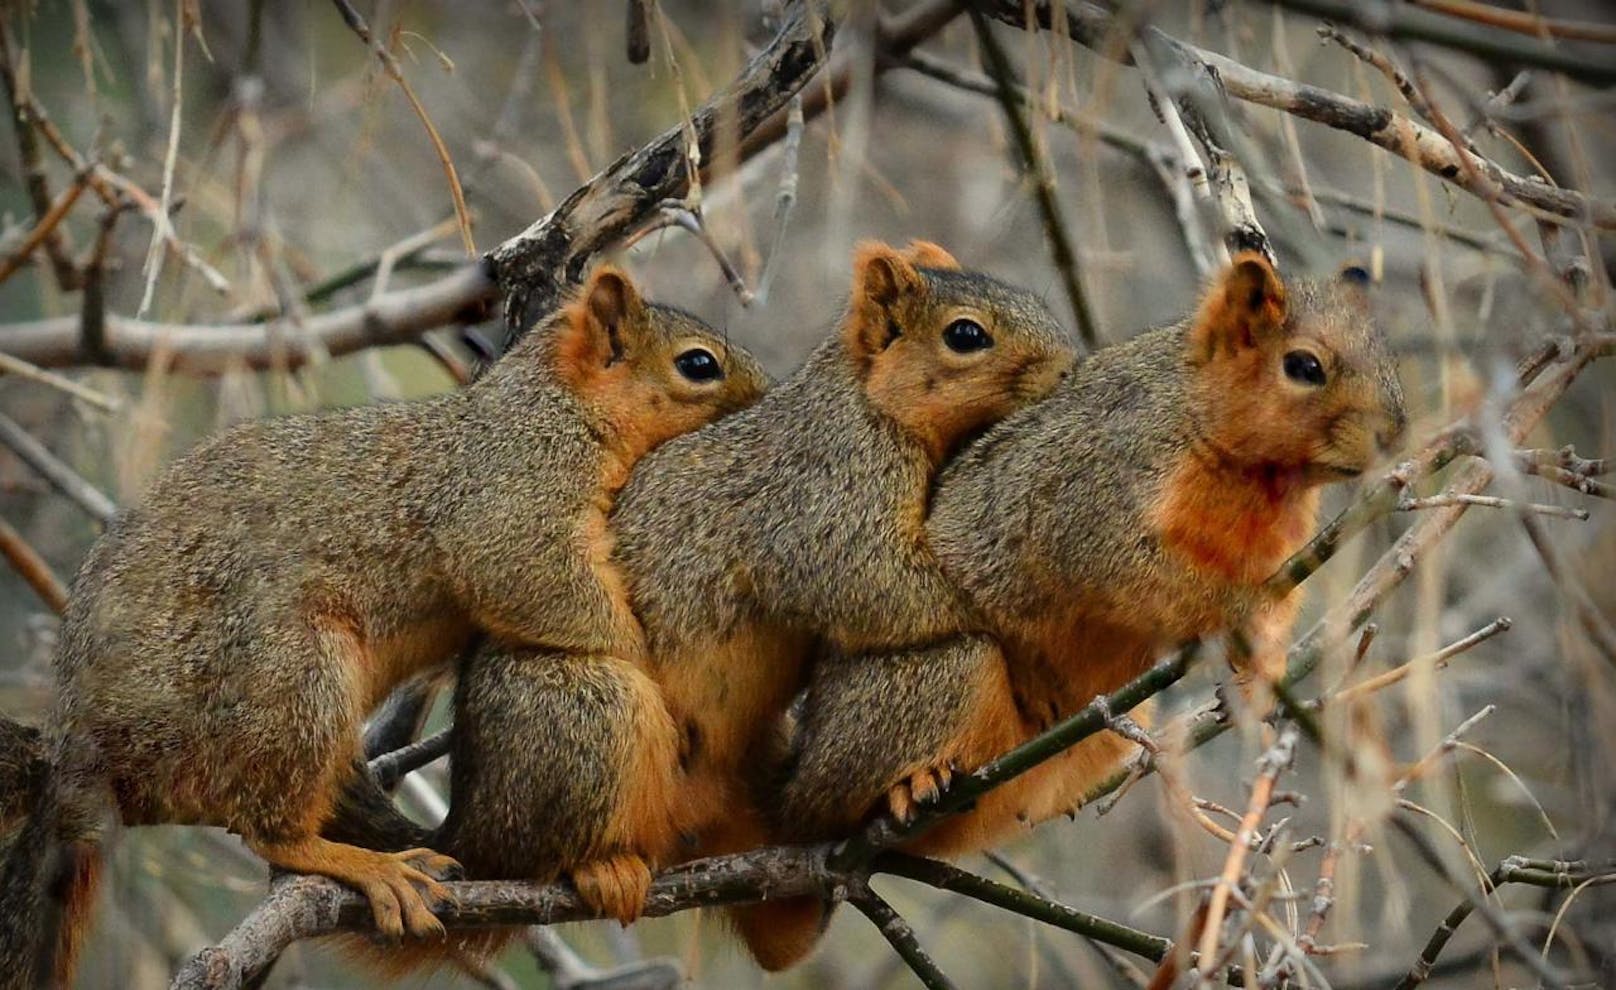 <b>Kuschelnde Eichhörnchen in Montana (USA)?</b> Der Fotograf des Bildes dachte, er hätte ein süßes Gruppenfoto von den Eichhörnchen geschossen. Der Schnappschuss stellte sich als etwas weniger unschuldig heraus... Zwei der drei Eichhörnchen paaren sich.